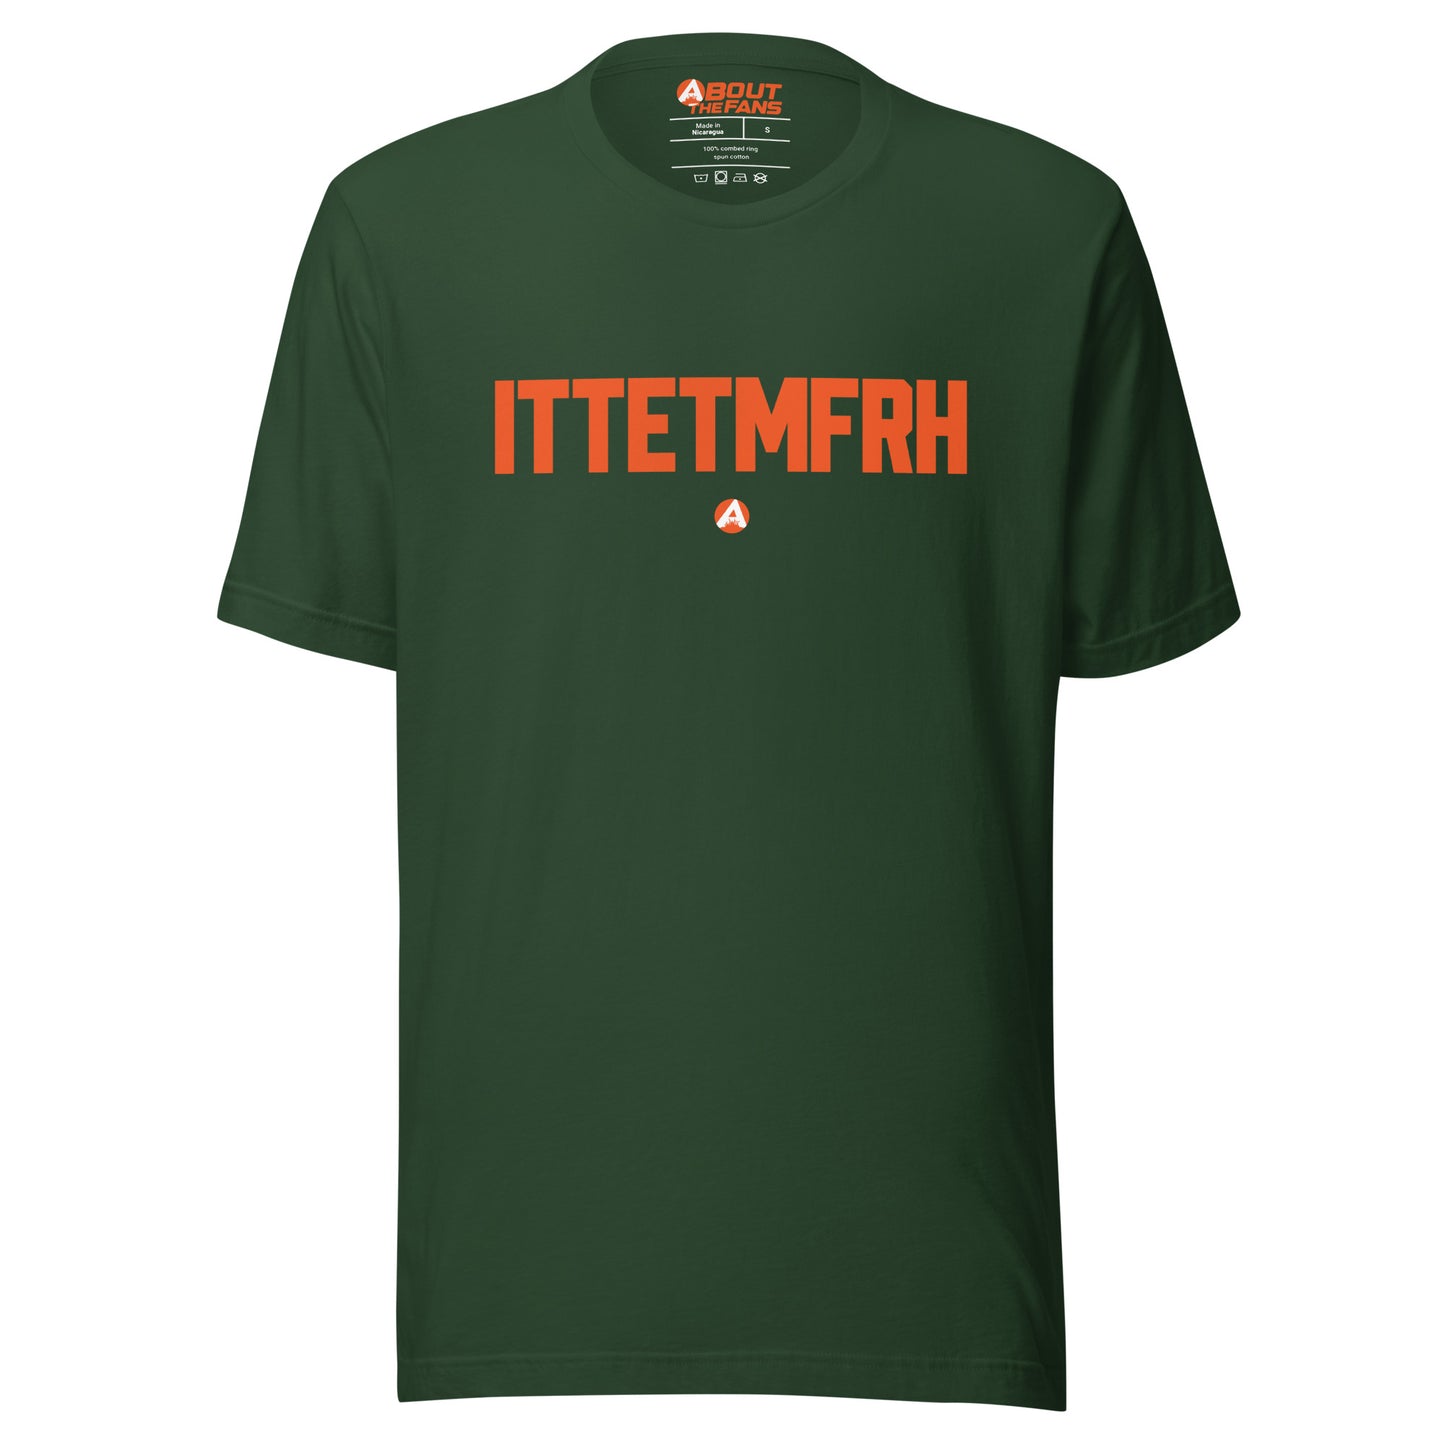 ITTETMFRH Shirt